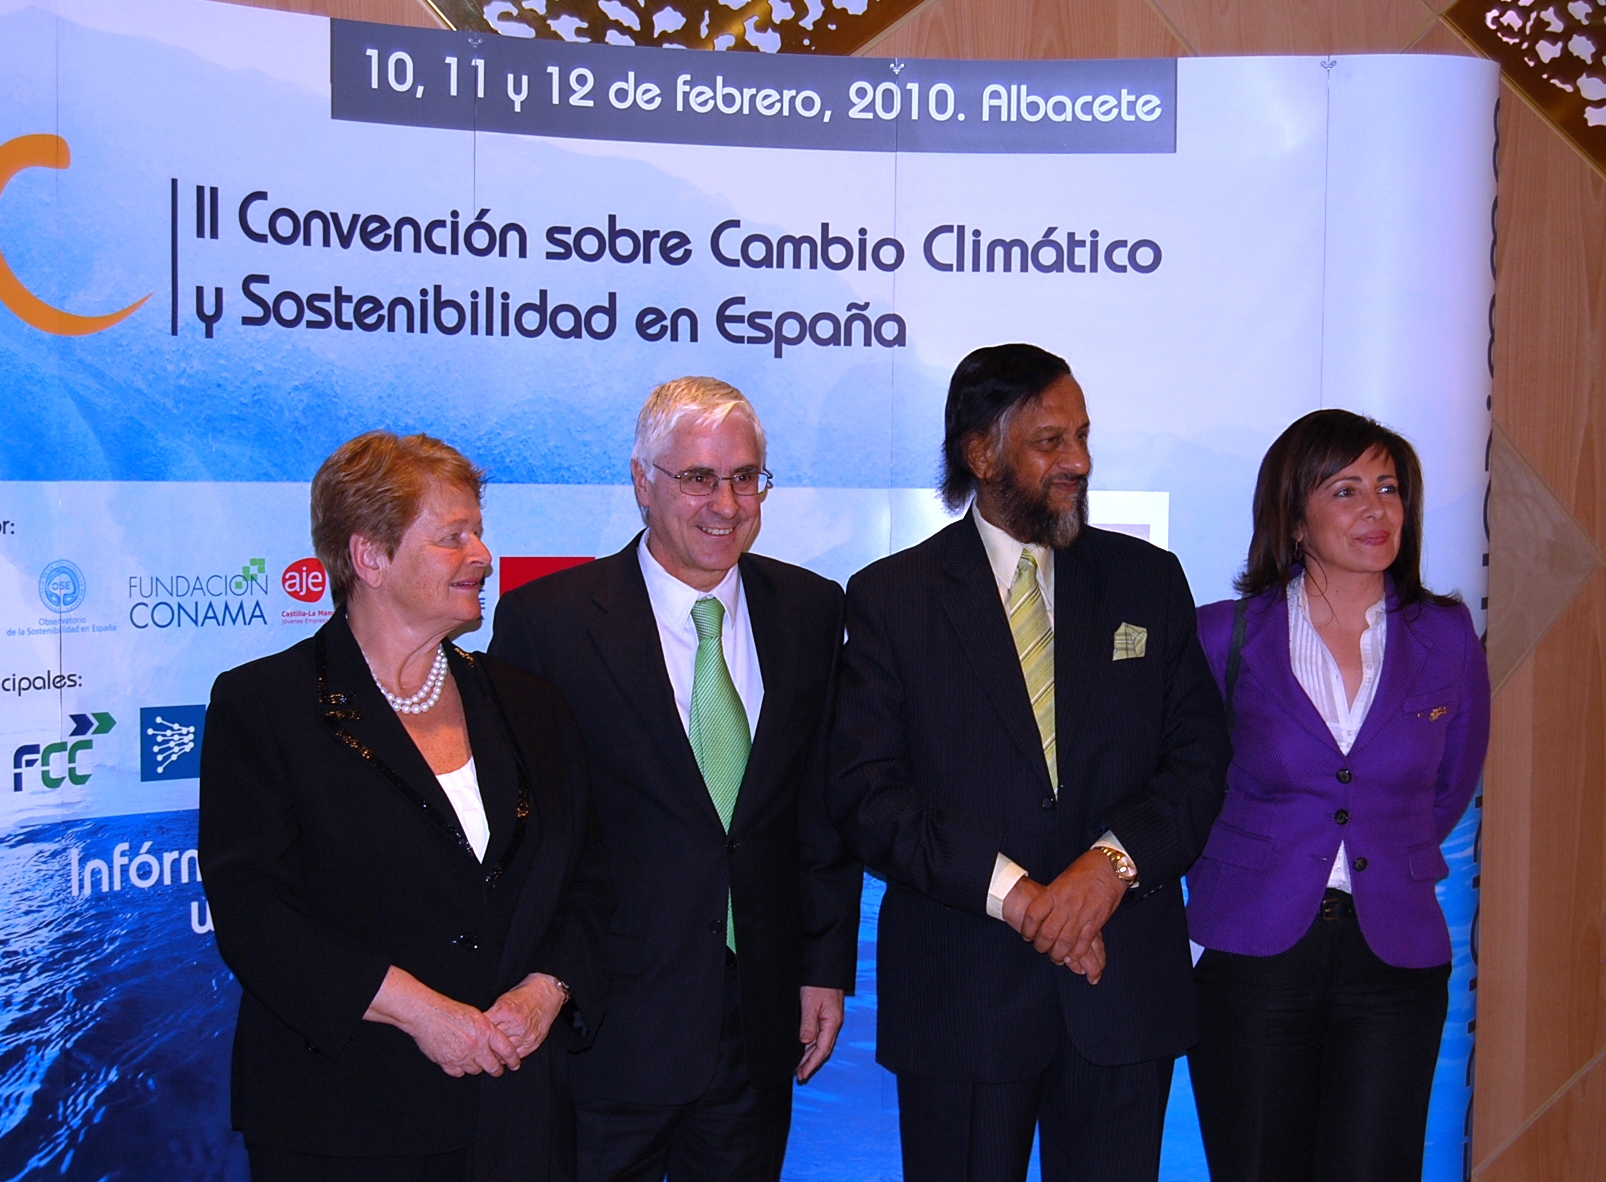 Gro Harlem Brundtland, José María Barreda, Rajendra Pachauri y Carmen Oliver, posan tras la inauguración de la Convención